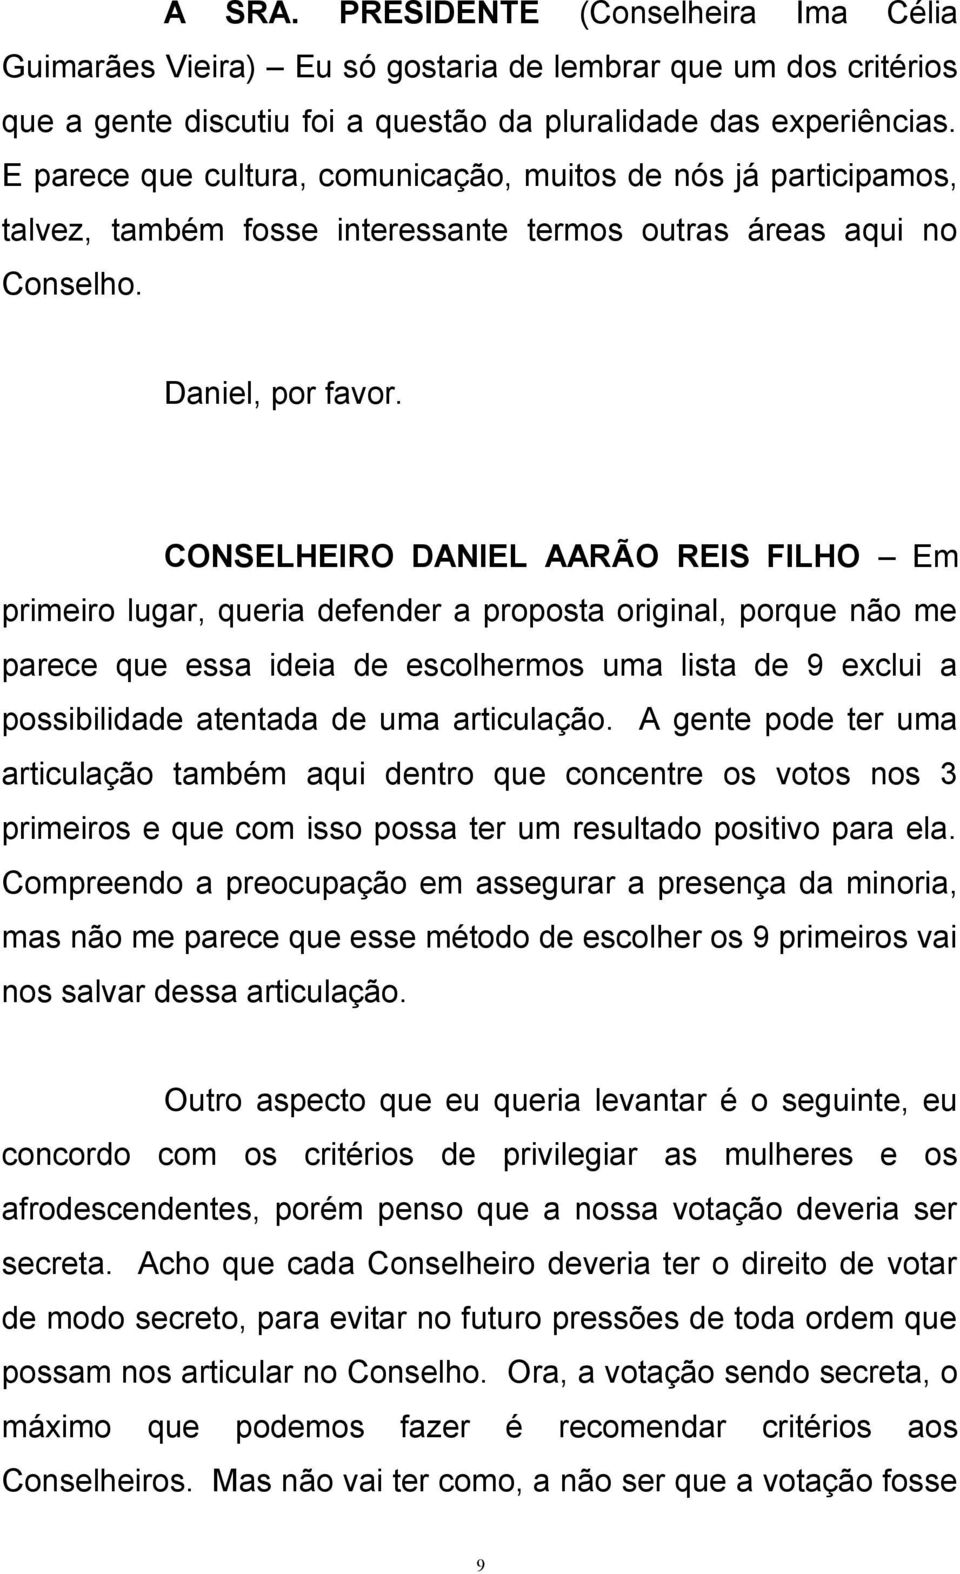 CONSELHEIRO DANIEL AARÃO REIS FILHO Em primeiro lugar, queria defender a proposta original, porque não me parece que essa ideia de escolhermos uma lista de 9 exclui a possibilidade atentada de uma